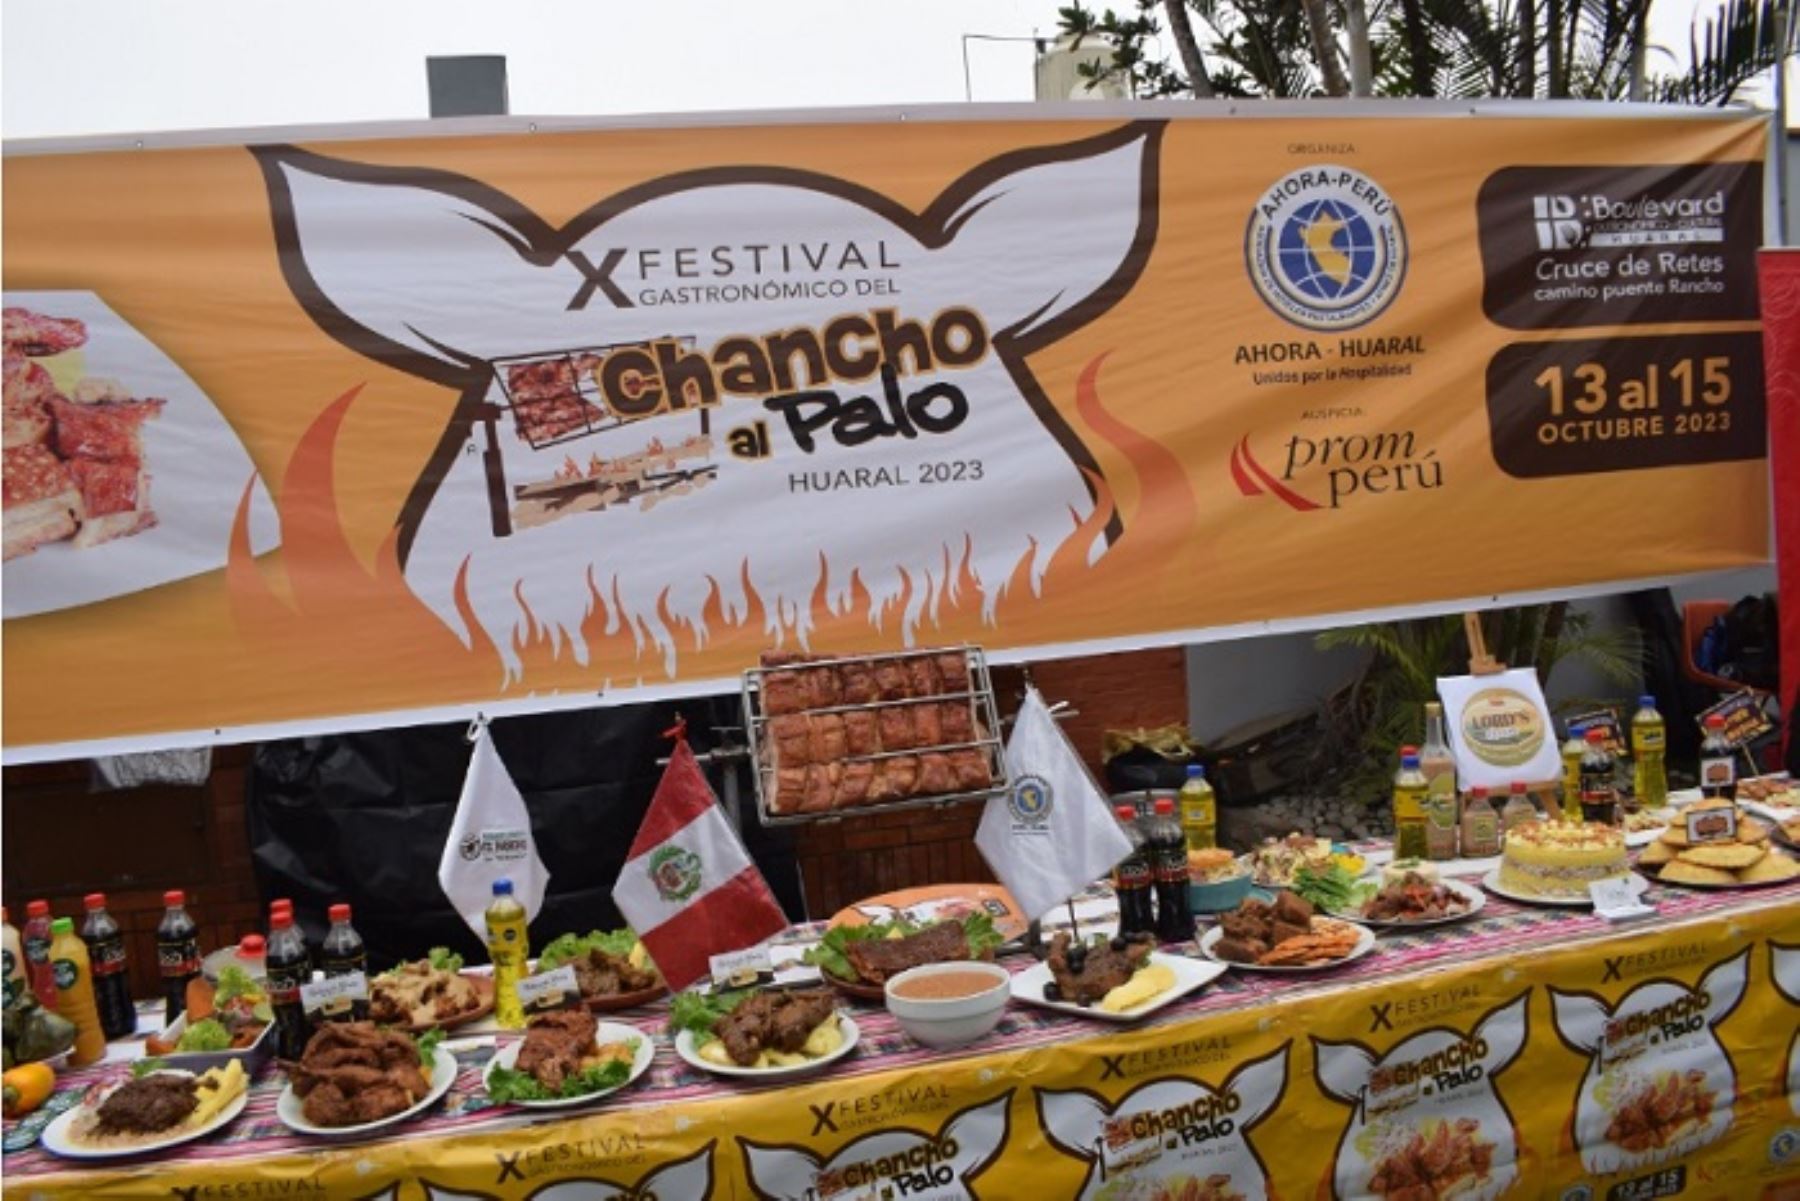 En los tres días de festival se espera vender más de 50,000 platos de chancho al palo en el  bulevar gastronómico y cultural de Huaral.